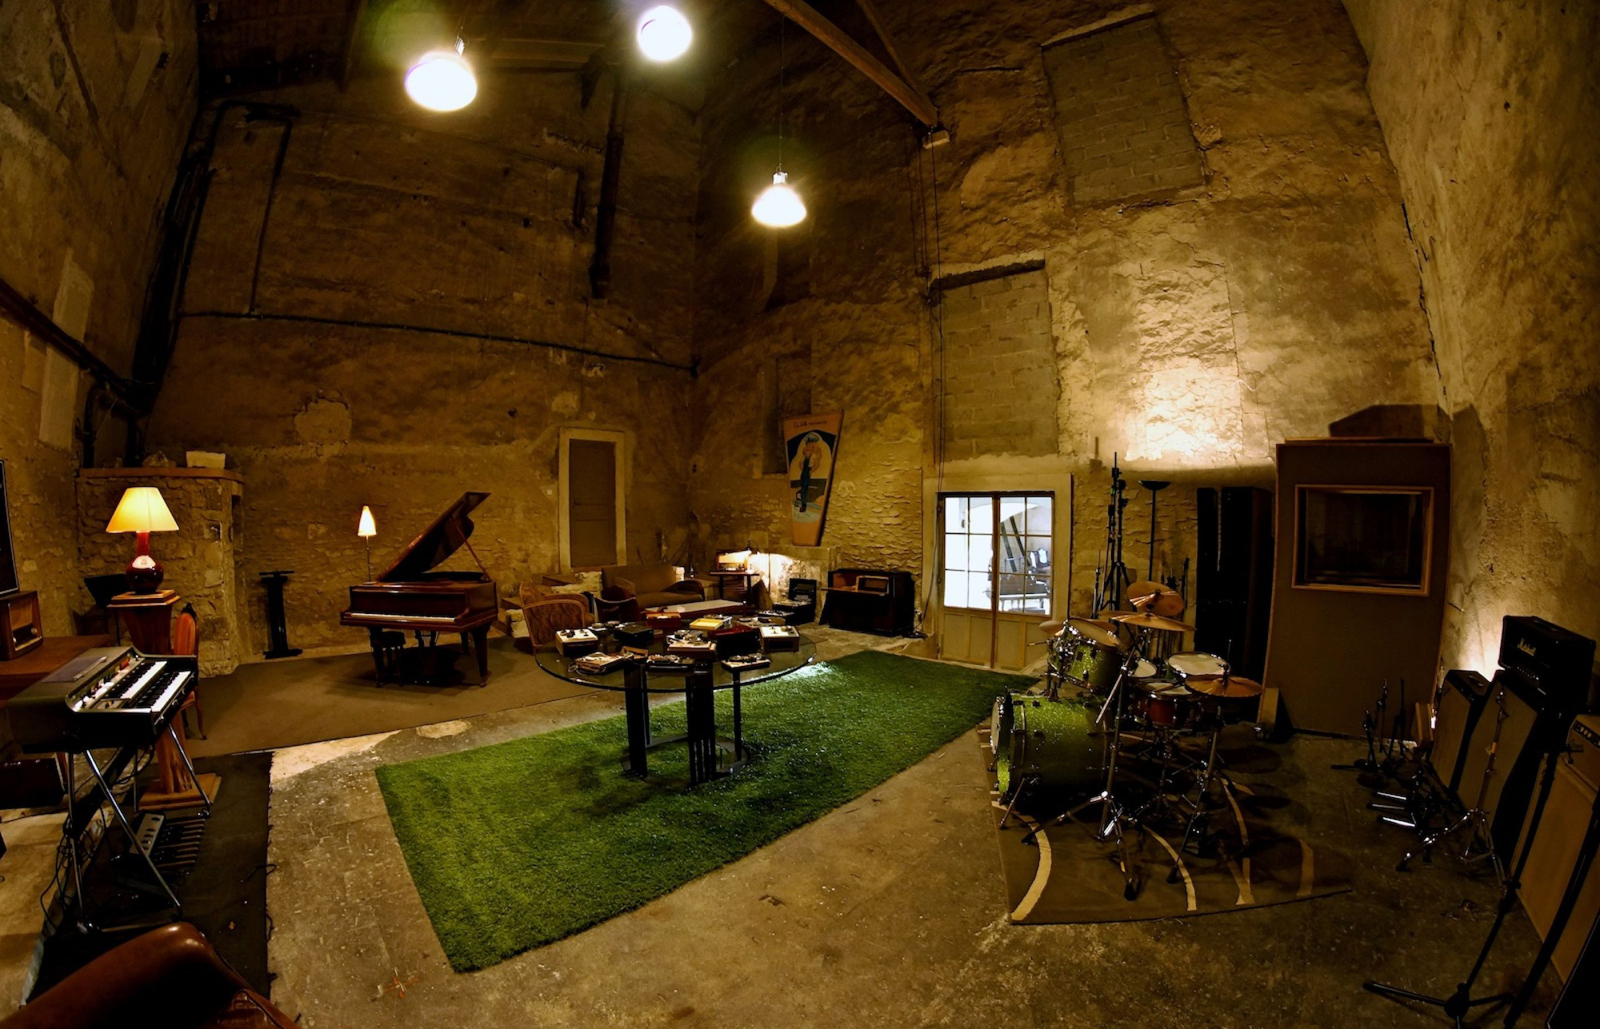 Image 2 of La Fabrique recording studio. Courtesy of the studio